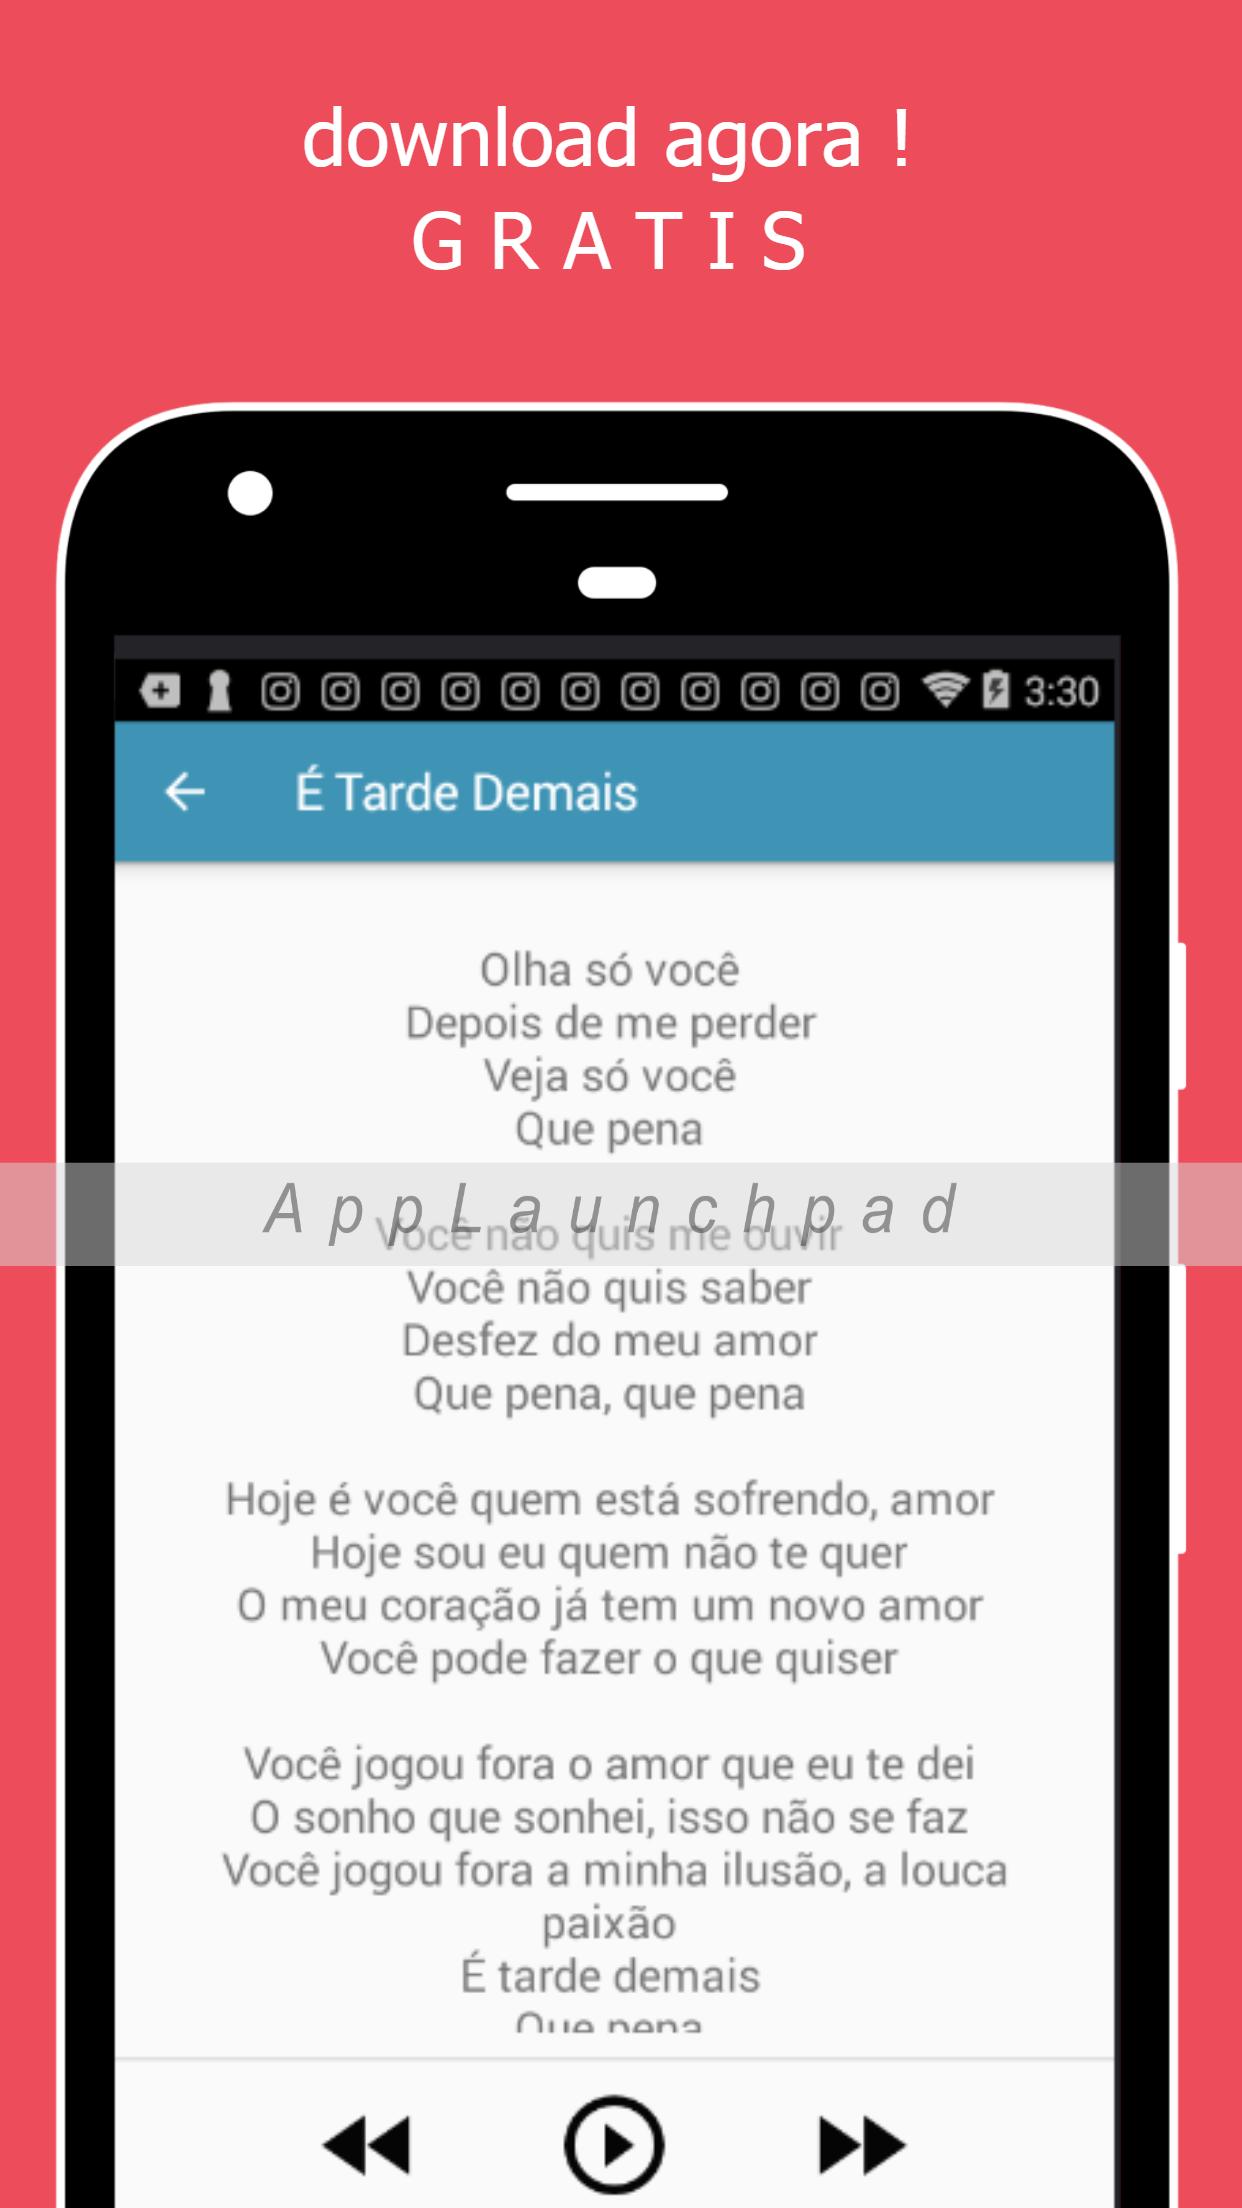 Raça Negra APK für Android herunterladen